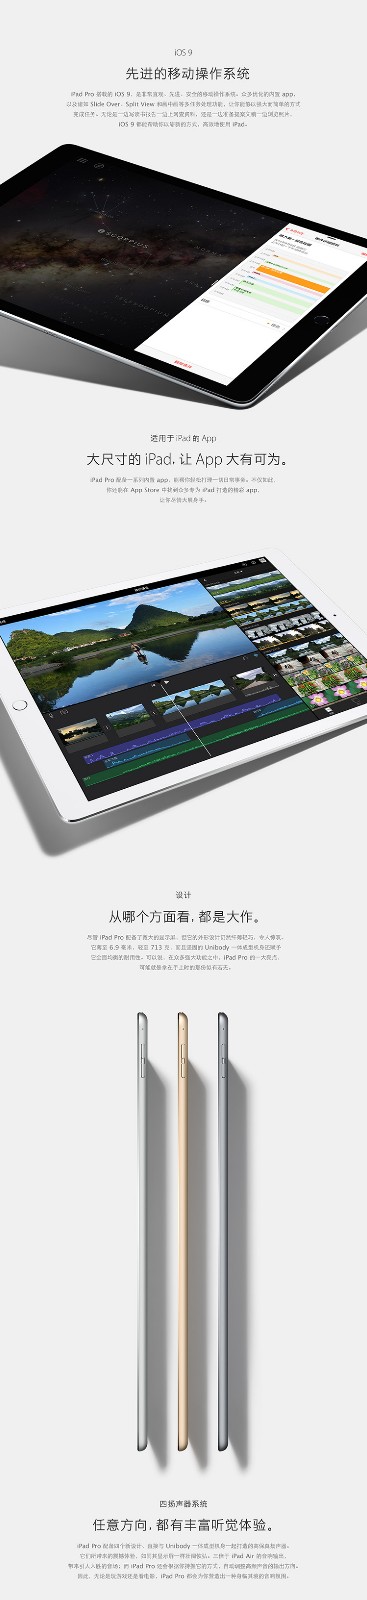 jd-iPad Pro 12.9-2.jpg